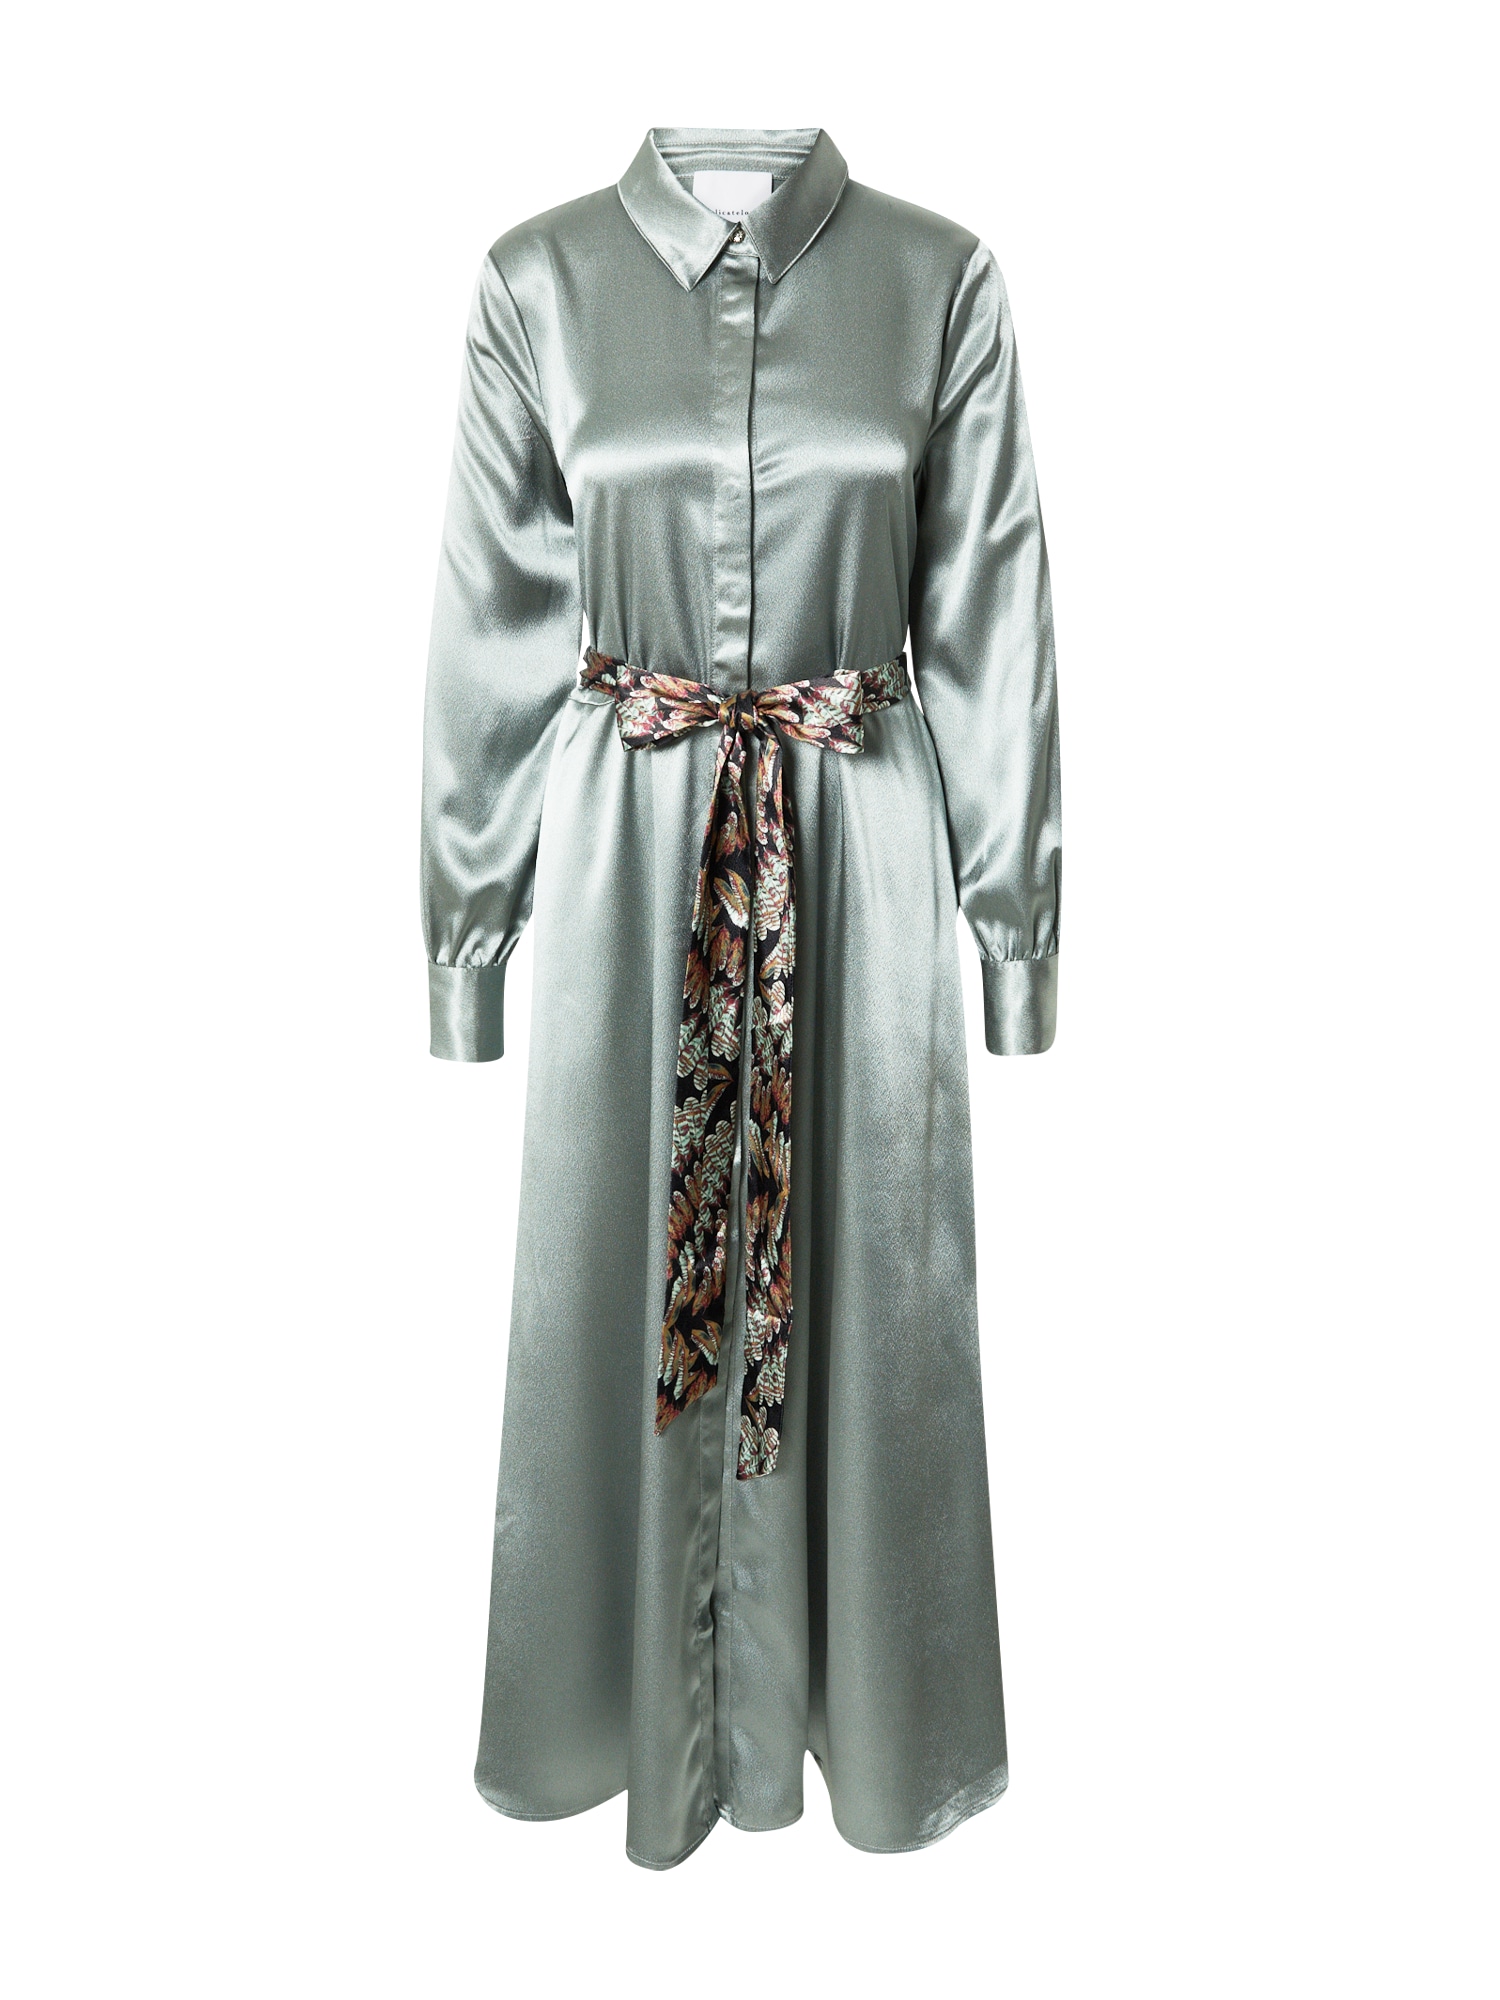 DELICATELOVE Palaidinės tipo suknelė 'AMIRA' šviesiai ruda / nefrito spalva / juoda